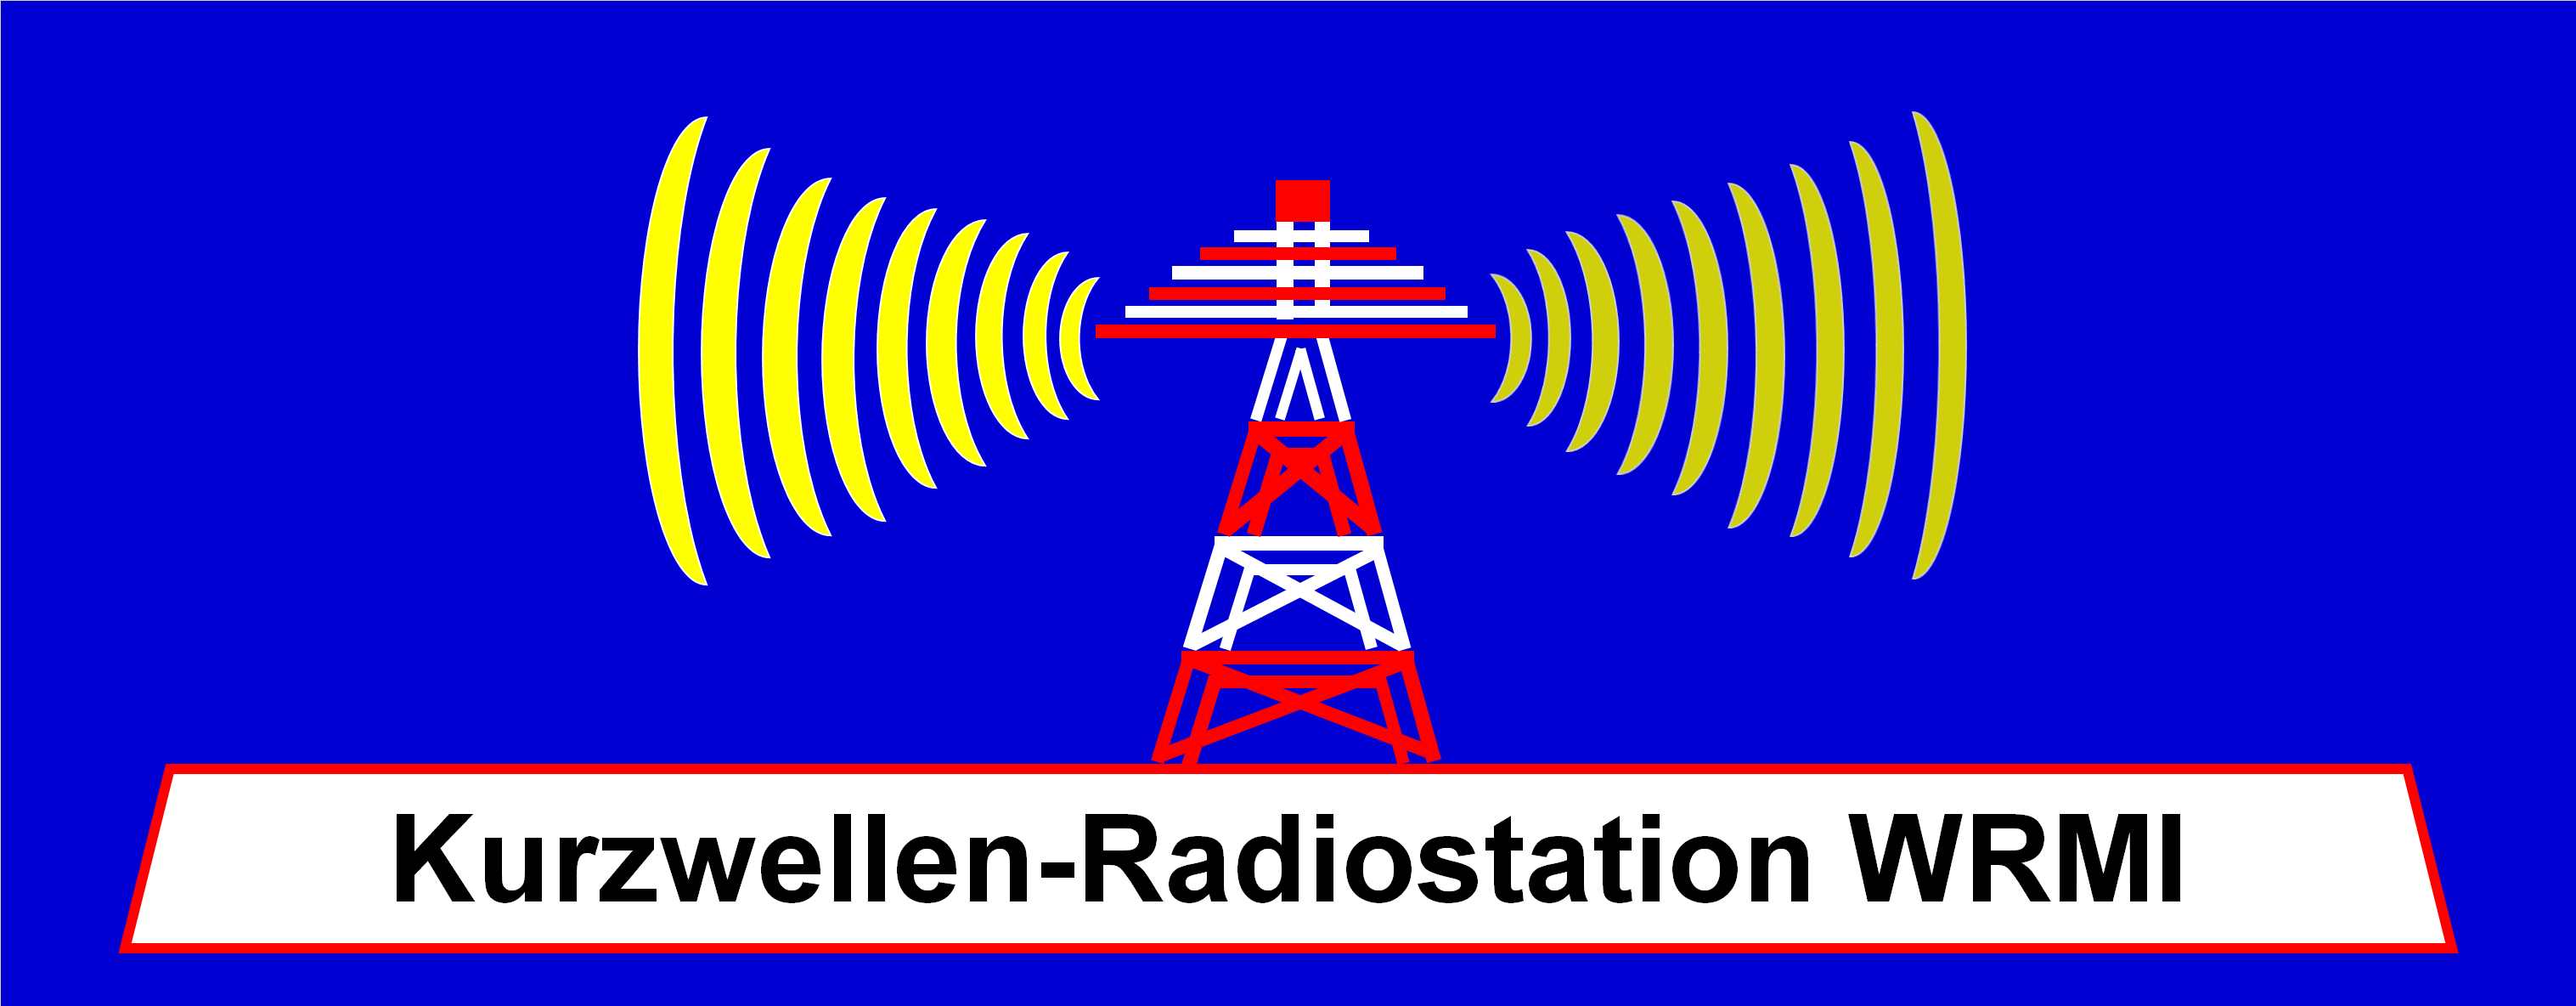 Kurzwellen-Radiostation WRMI